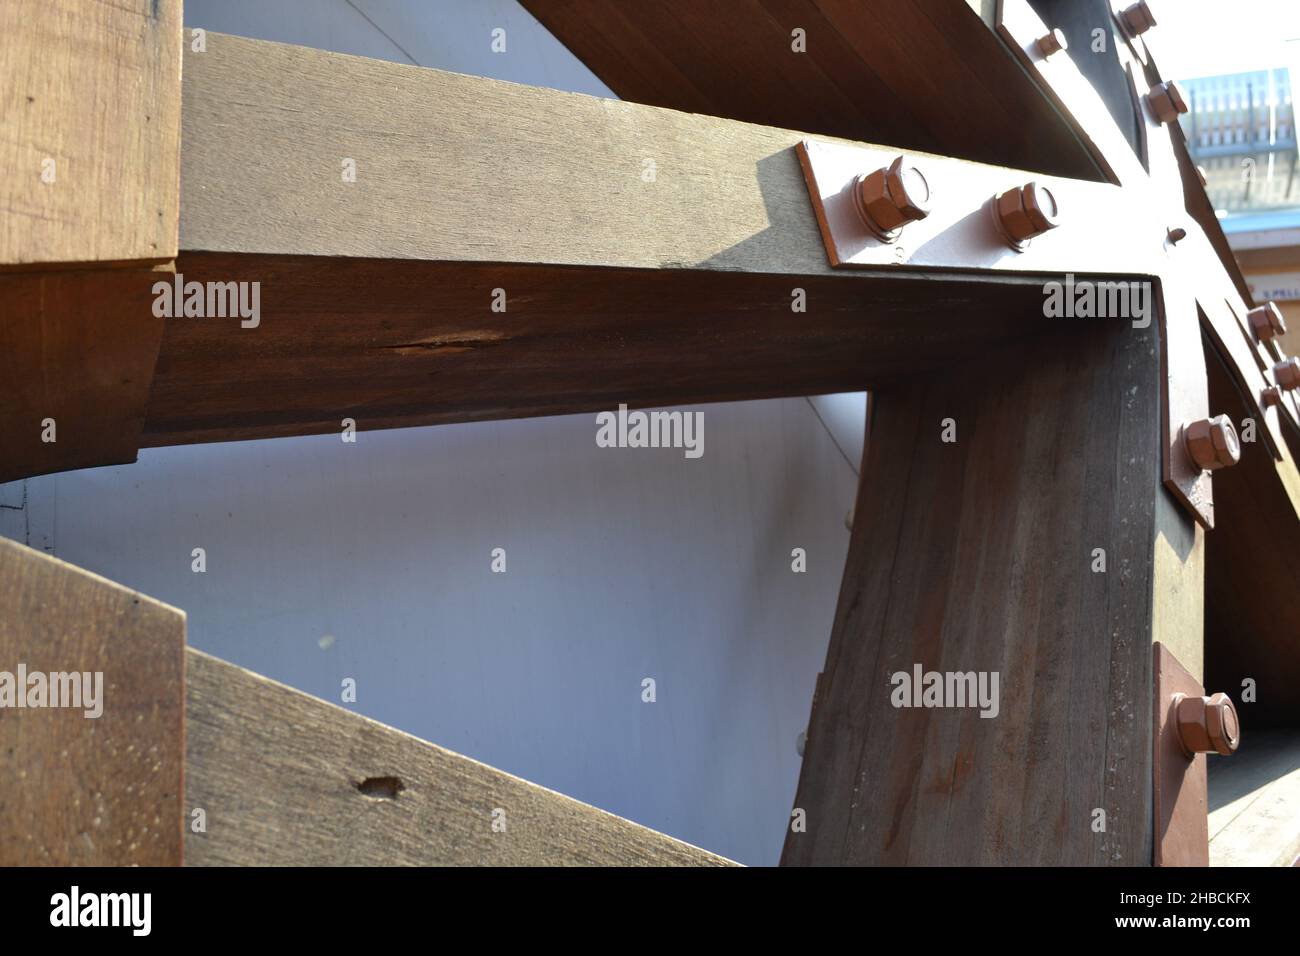 Vue rapprochée de la structure solide à interverrouillage en poutres en bois fixées avec de grands écrous en fer.Détails. Banque D'Images